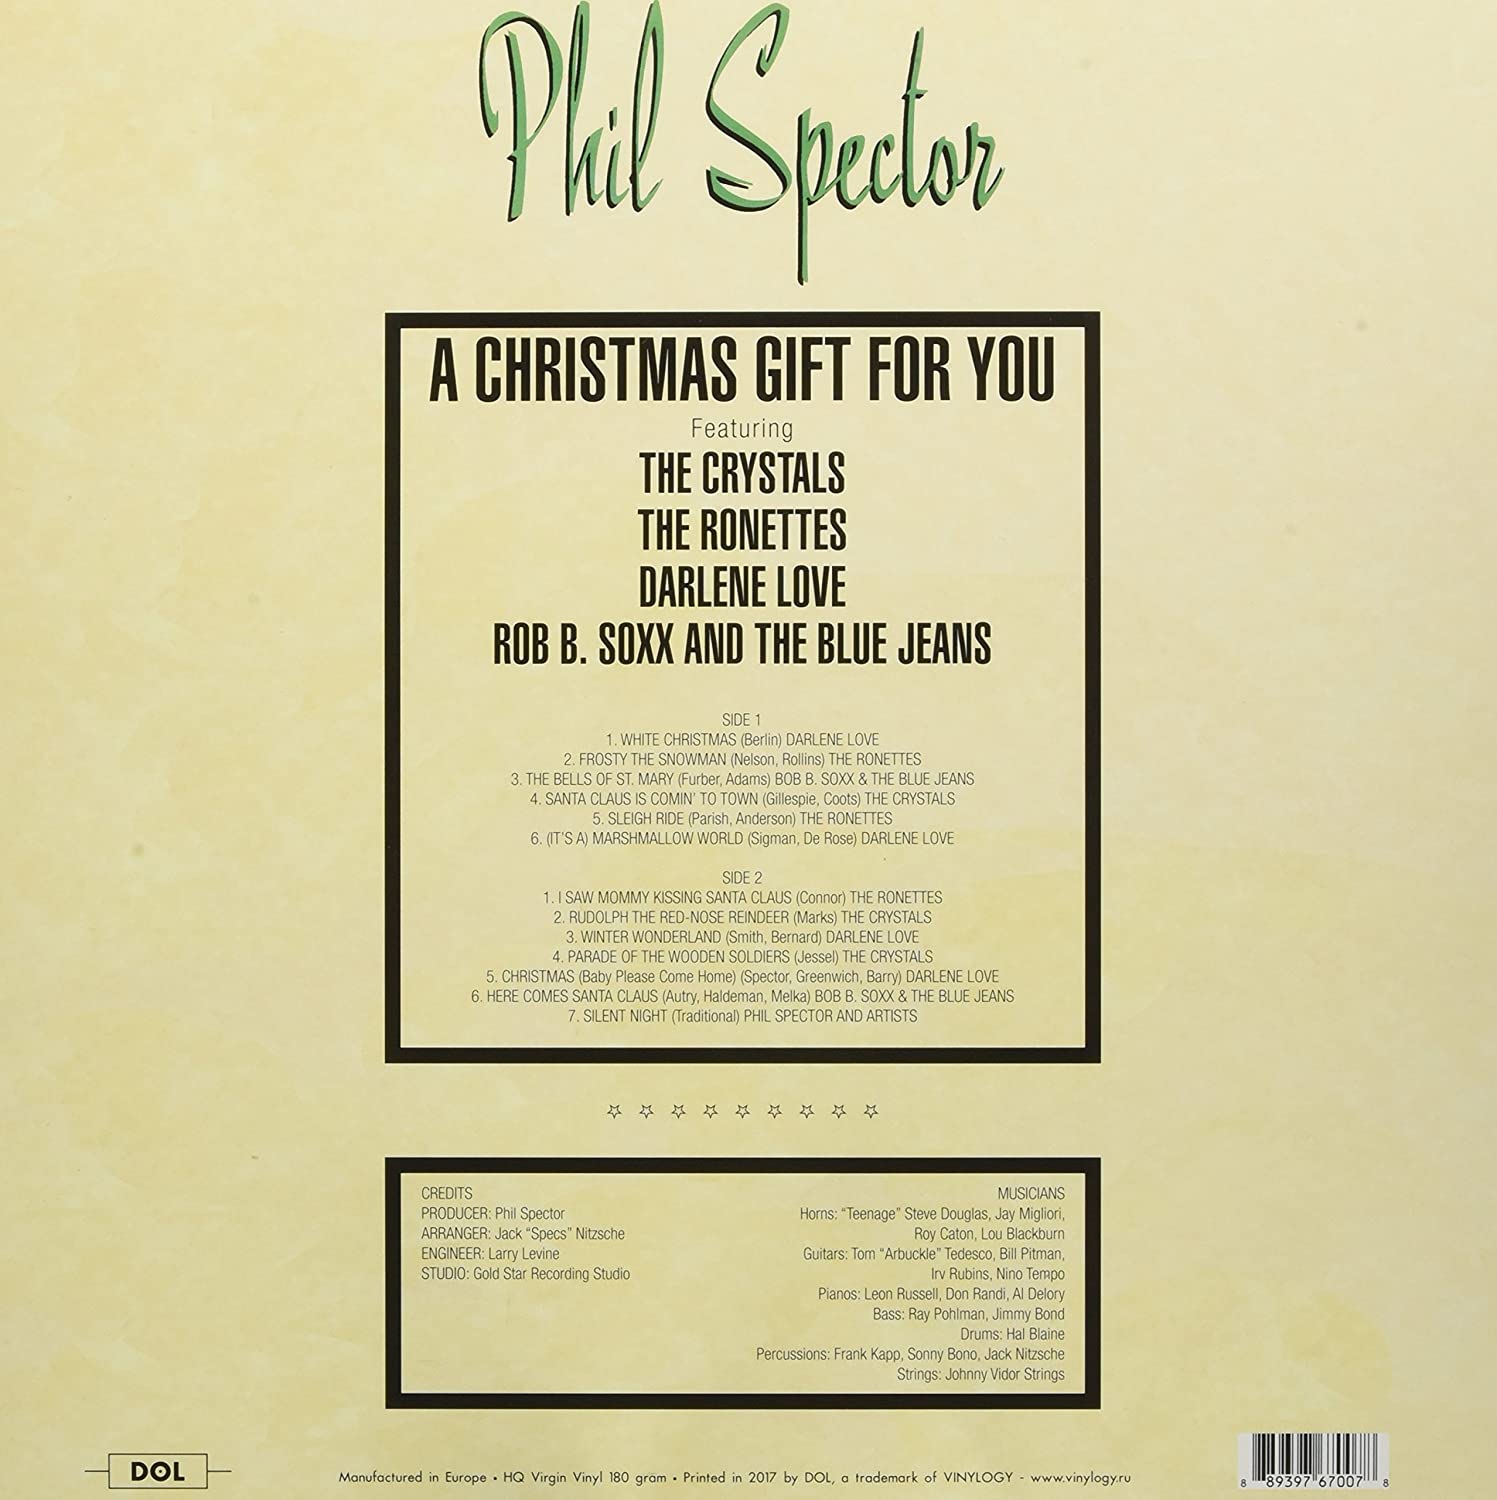 필 스펙터 크리스마스 앨범 (The Phil Spector Christmas Album - A Christmas Gift For You) [픽쳐디스크 LP] 